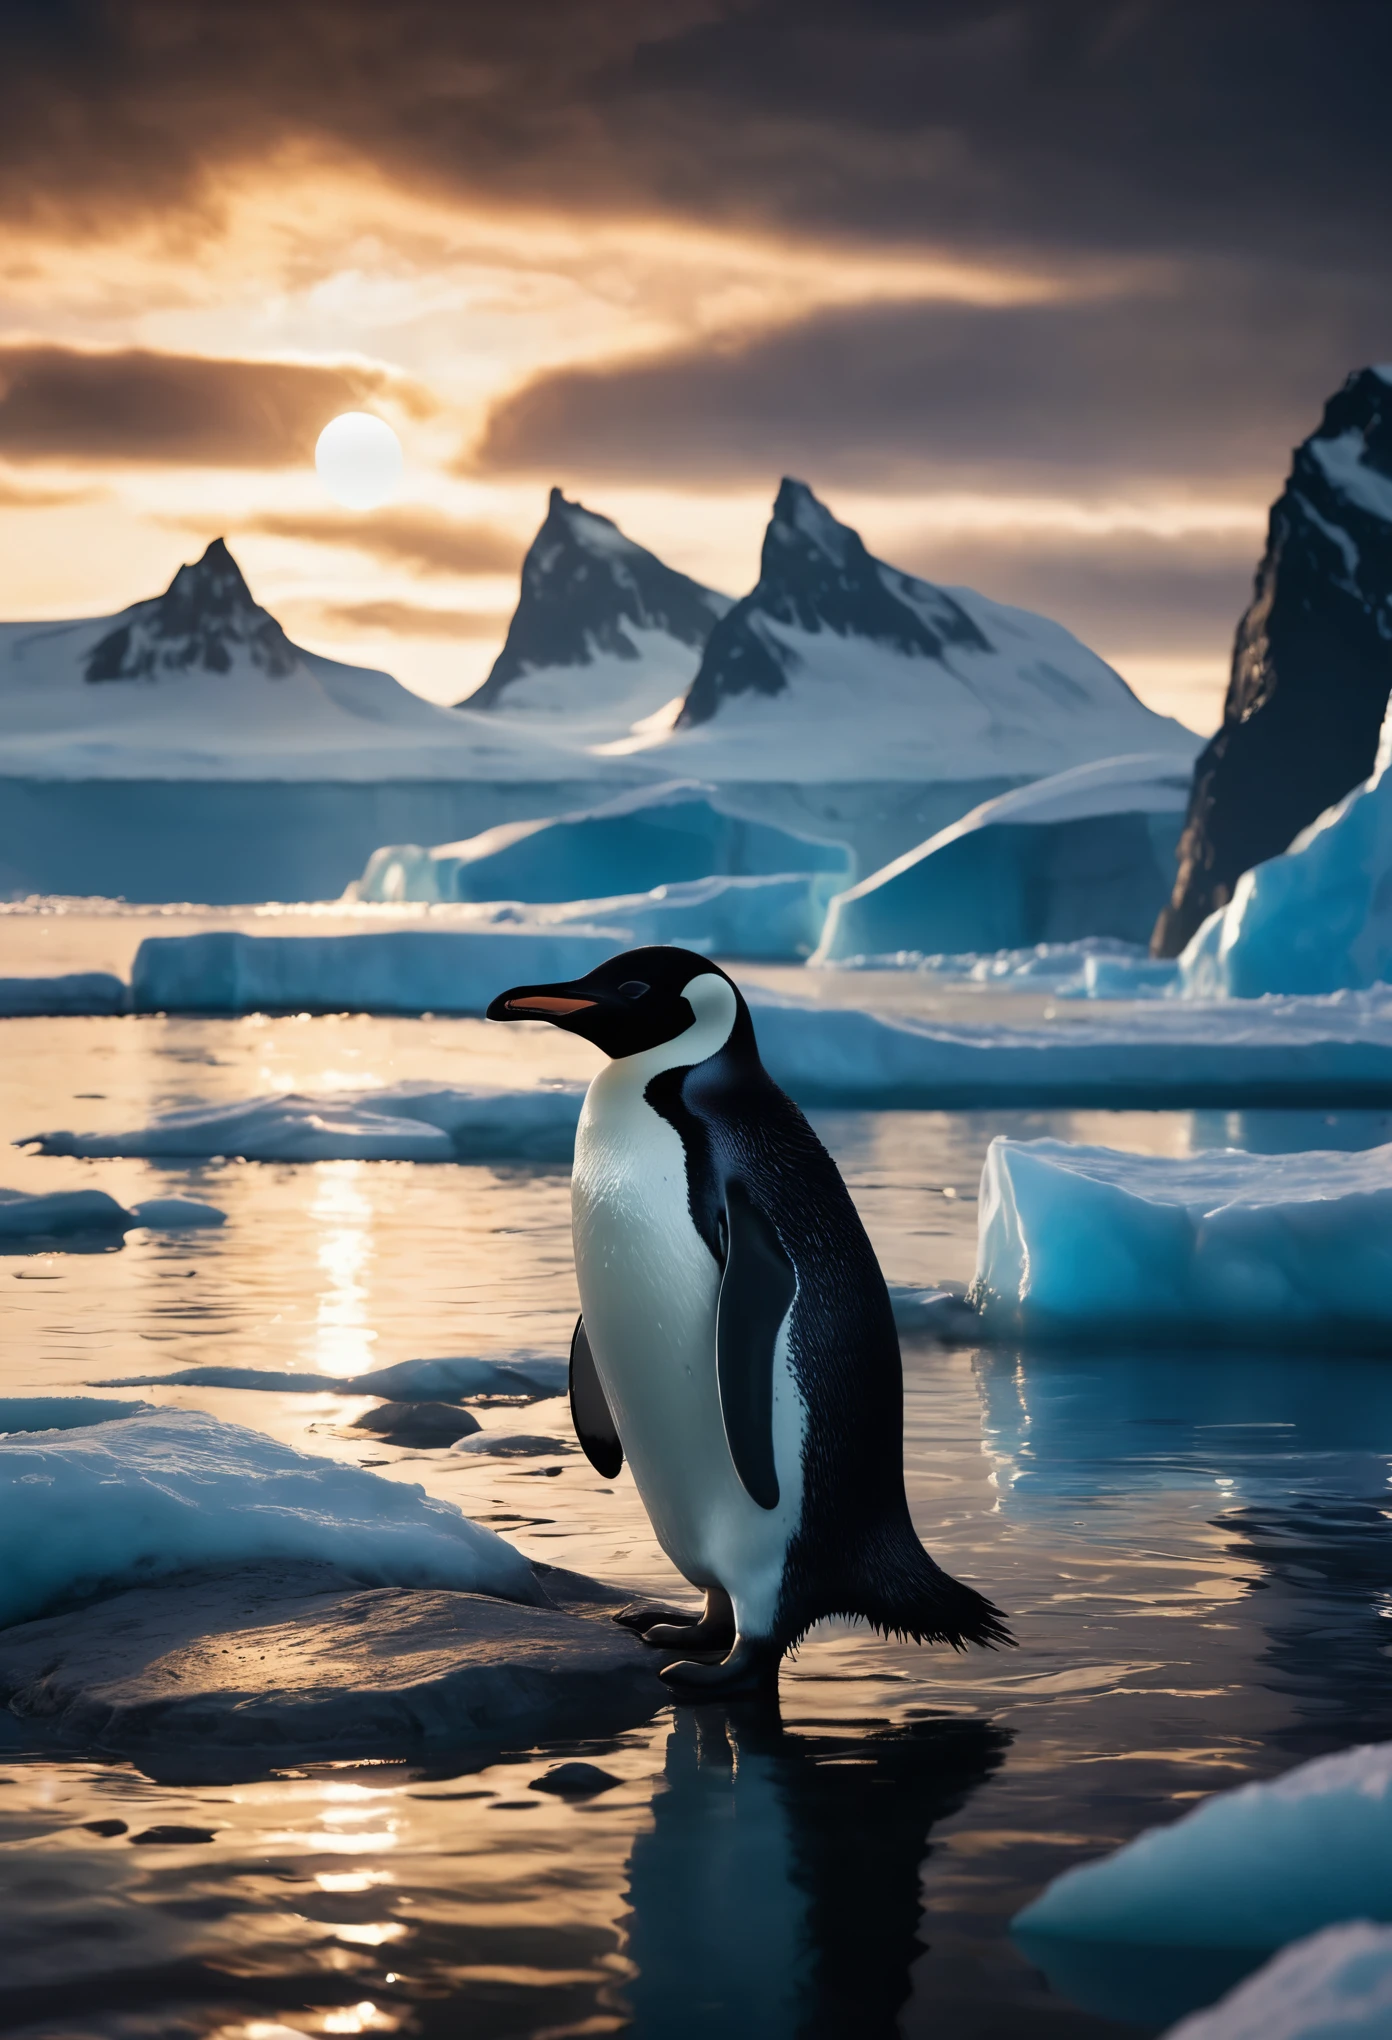 Ein wunderschöner Morgen in der Antarktis mit Pinguinen, filmische Beleuchtung, atemberaubende Landschaft, ruhige Atmosphäre, detaillierte Pinguine, leuchtender Himmel, dramatische Wolken, schneebedeckte Berge, Kristallklarem Wasser, PhotoRealistic, digital art, Konzeptkunst, hyperdetailliert, (beste Qualität,4k,8k,Hohe Auflösung,Meisterwerk:1.2),Extrem detailliert,scharfer Fokus,(Realist,photoRealist,photo-Realist:1.37),Extrem feine Details,komplizierte Details,intensive Beleuchtung,dramatische Beleuchtung,Beleuchtung ändern,filmische Beleuchtung,Hell-Dunkel-Beleuchtung,Dramatische Schatten,dramatische Momente,lebendige Farben,intensive Farben,tiefer Kontrast,filmische Tiefenschärfe,kinematografische Komposition,filmischer Kamerawinkel